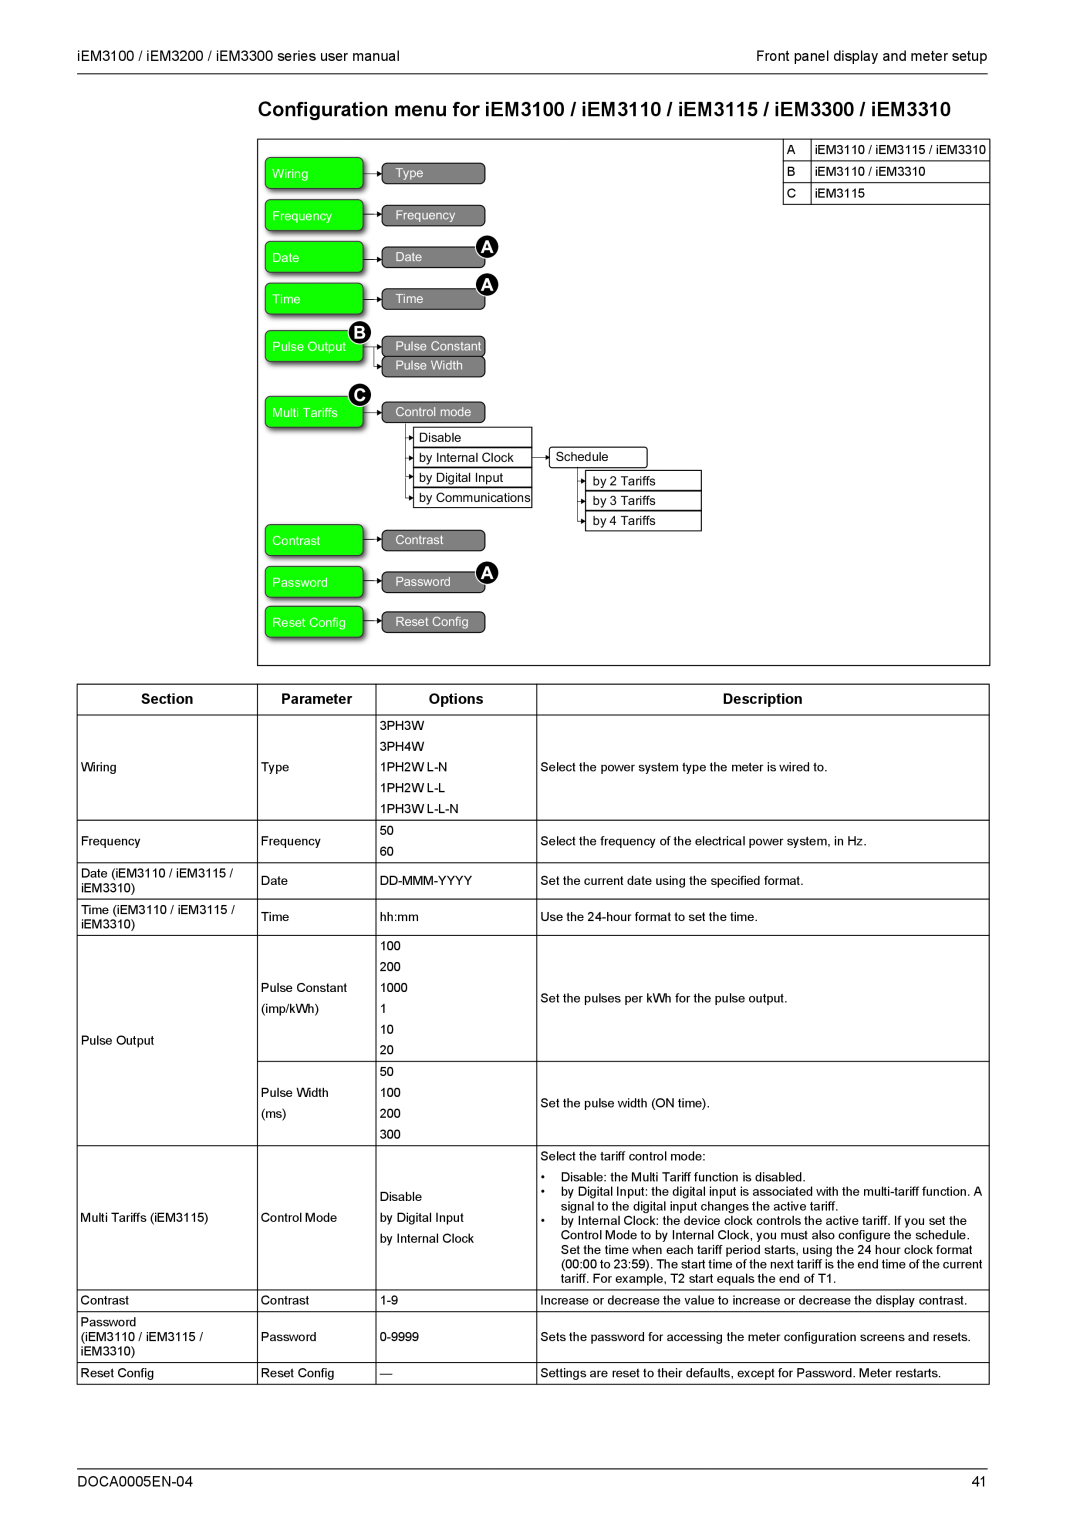 Schneider Electric iEM3100 Section, Parameter, Options, Description, DOCA0005EN-04, Front panel display and meter setup 